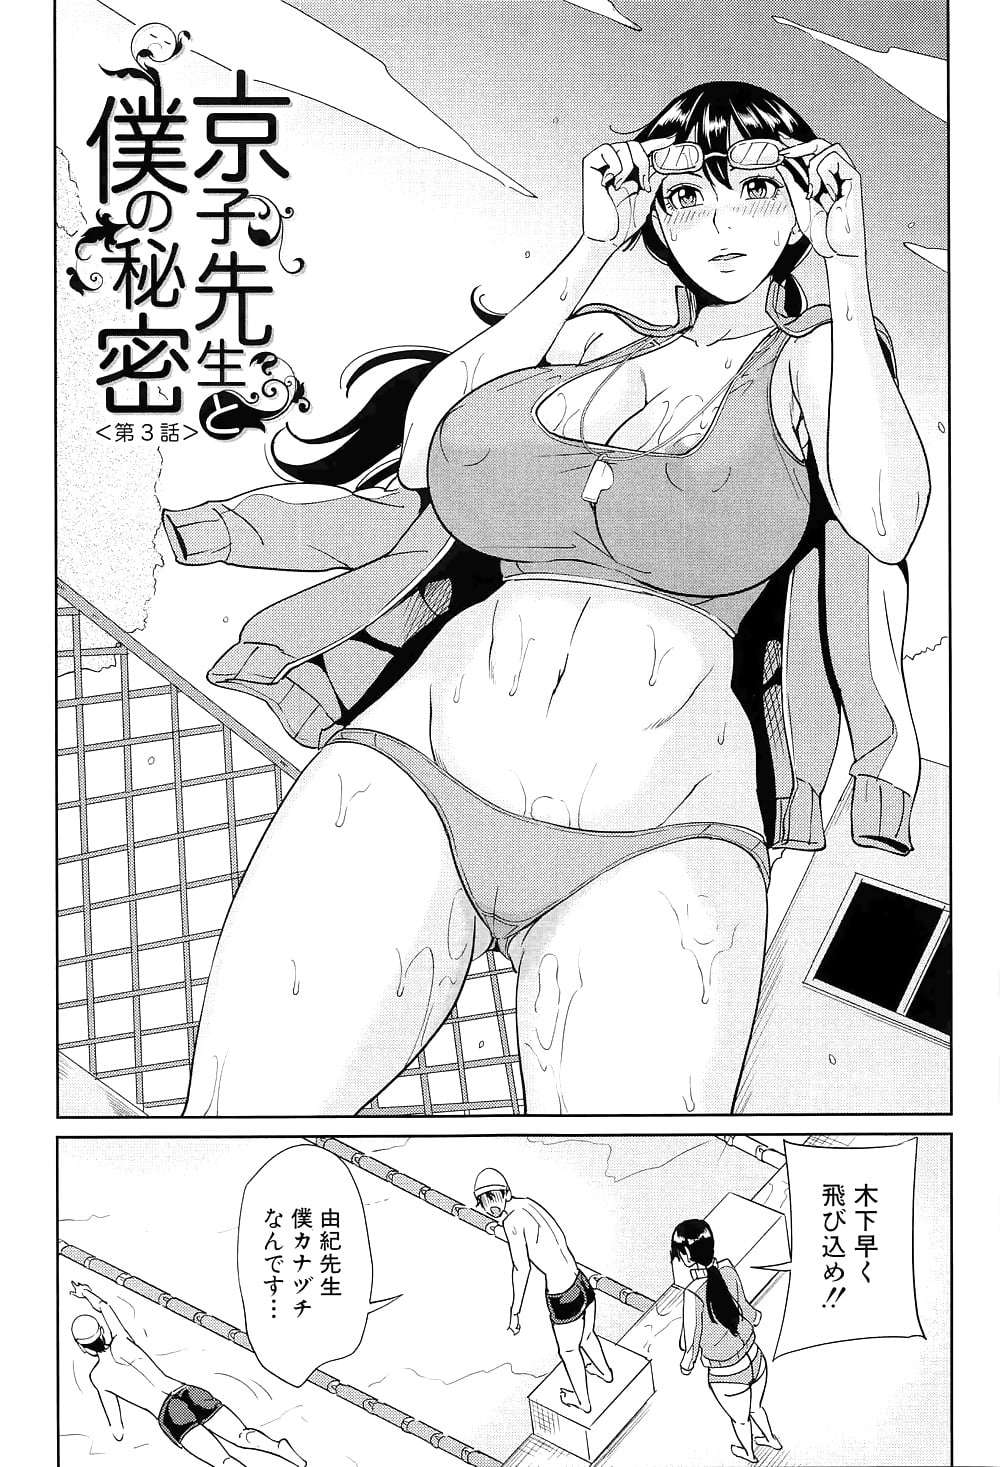 manga 21